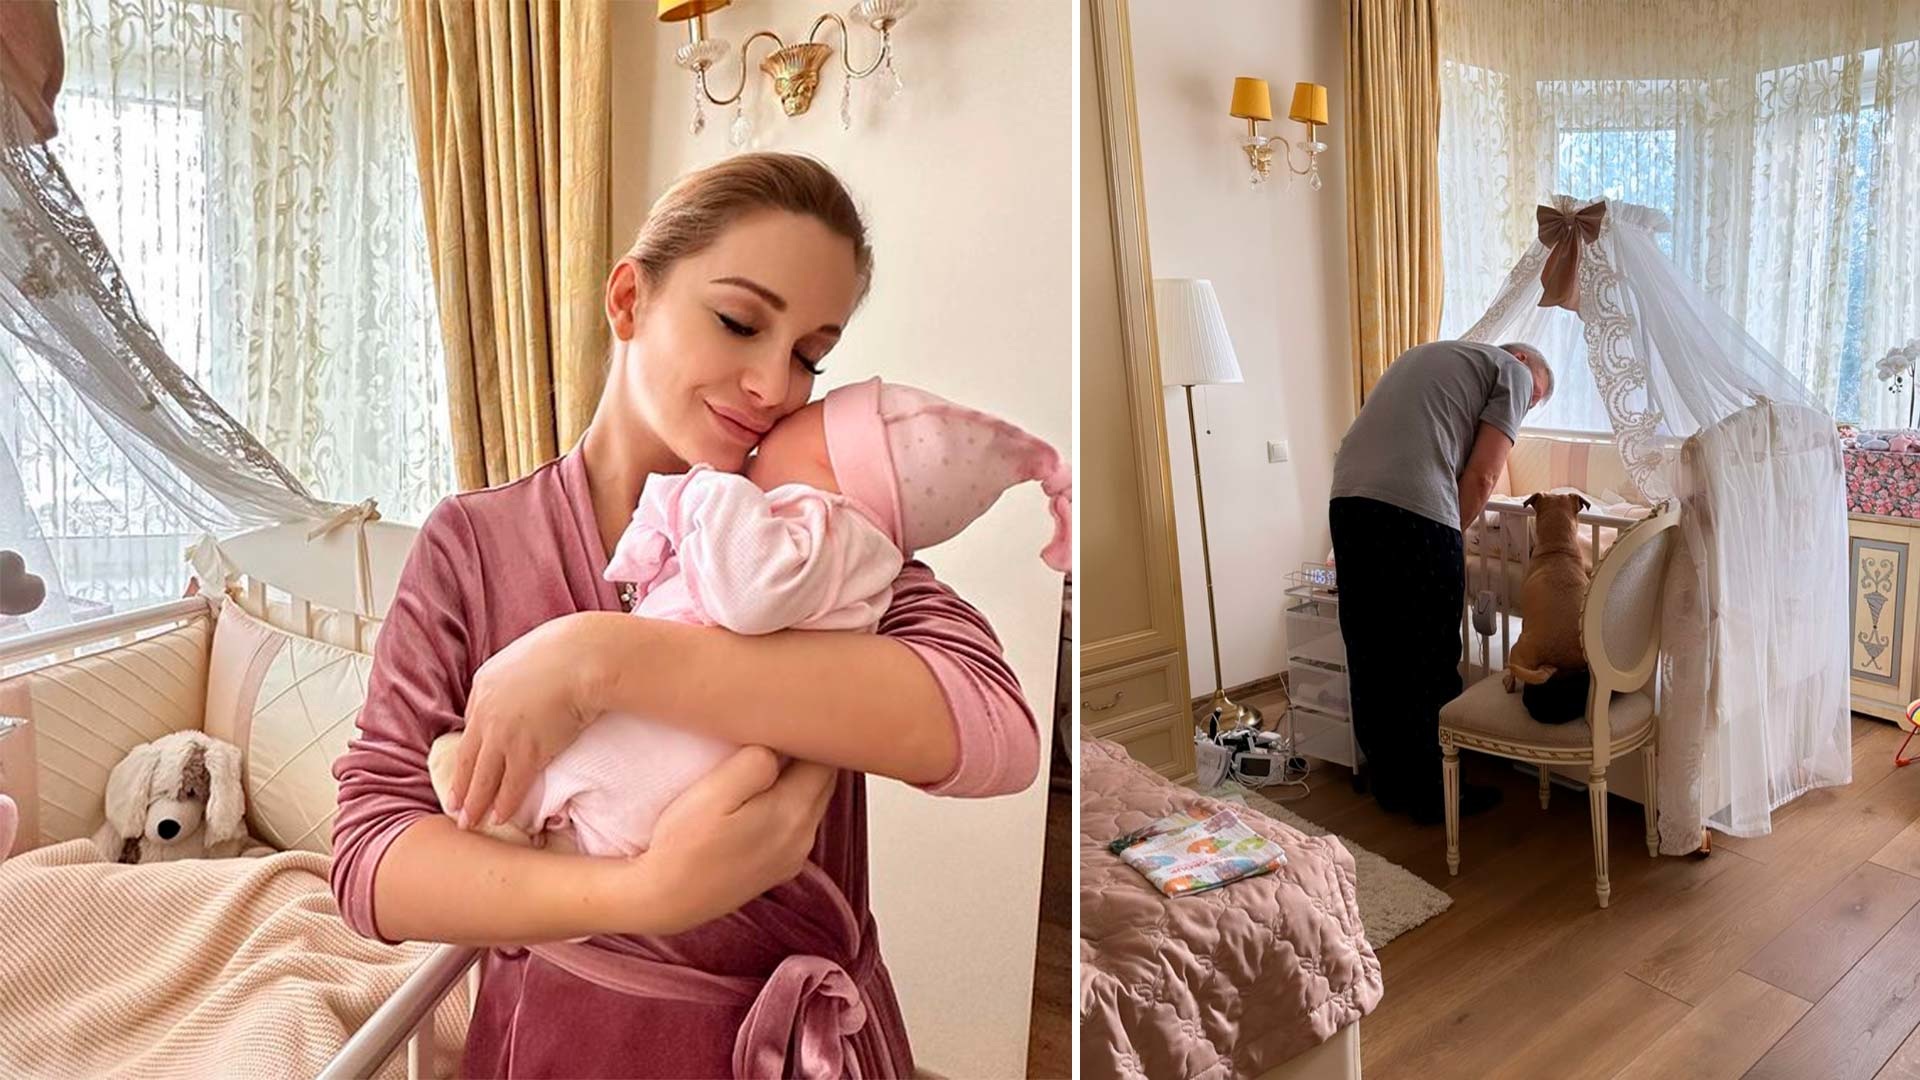 Ольга орлова родила второго ребенка фото